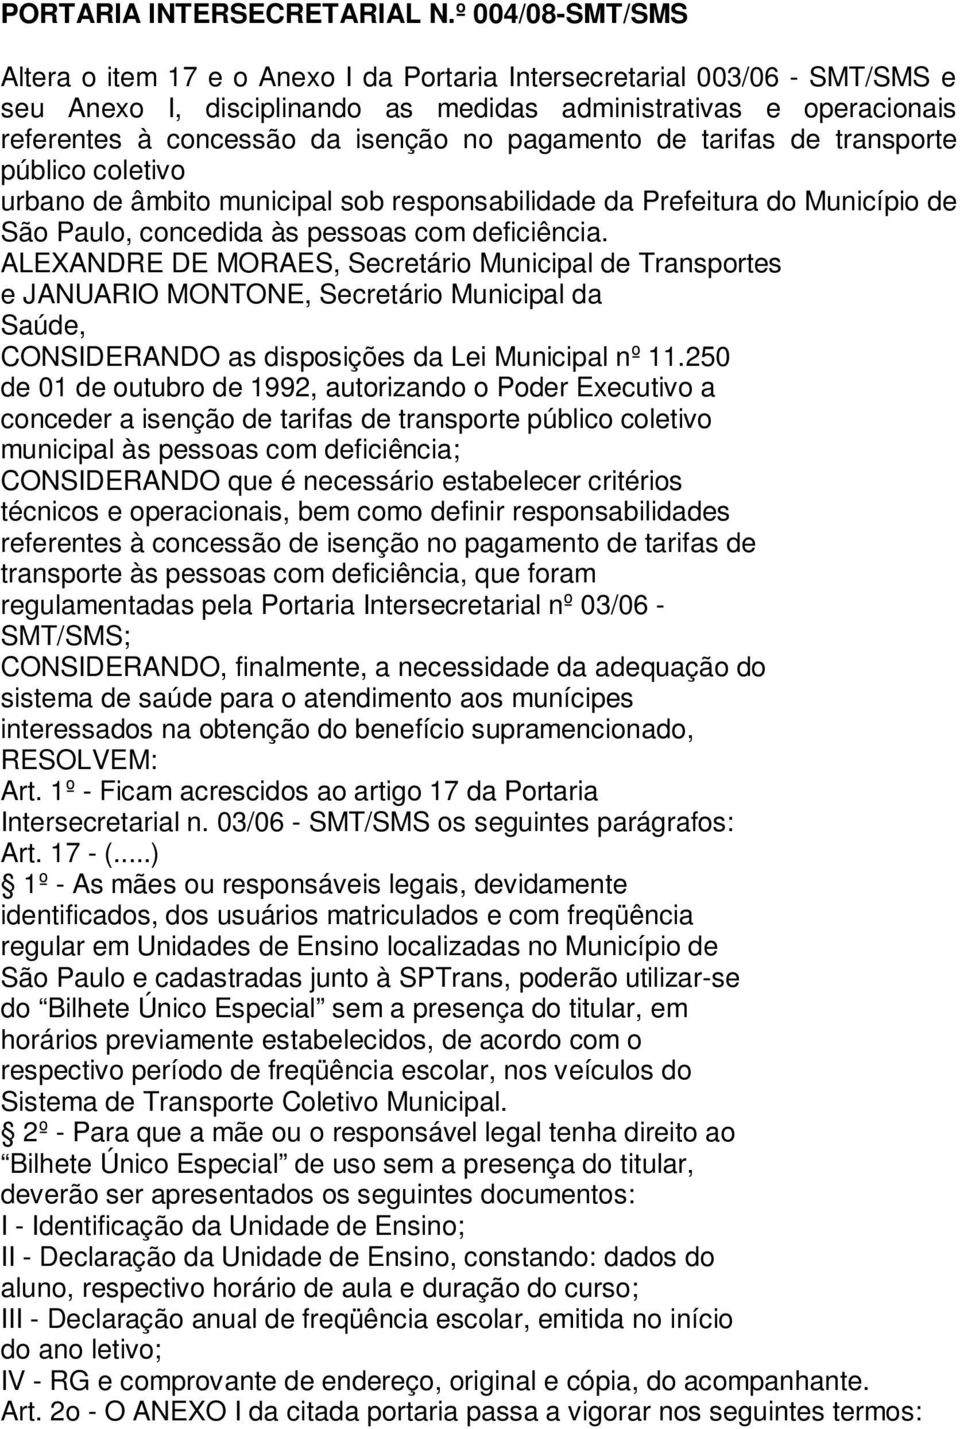 pagamento de tarifas de transporte público coletivo urbano de âmbito municipal sob responsabilidade da Prefeitura do Município de São Paulo, concedida às pessoas com deficiência.